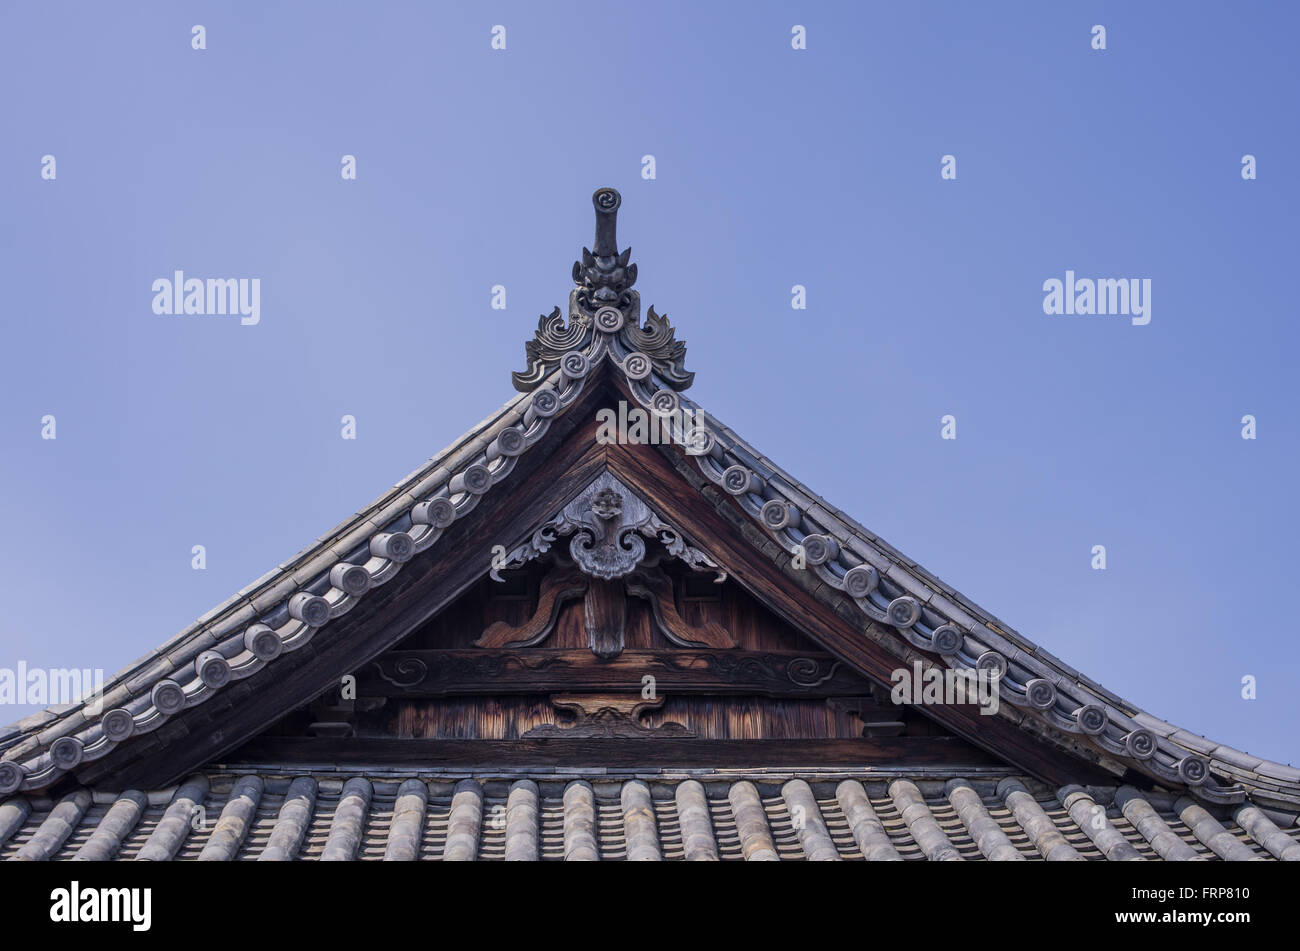 Dach der Izumo-Stil Architektur Gottesdienst Halle von Aichi Schrein in Kurashiki City, Präfektur Okayama, Japan Stockfoto